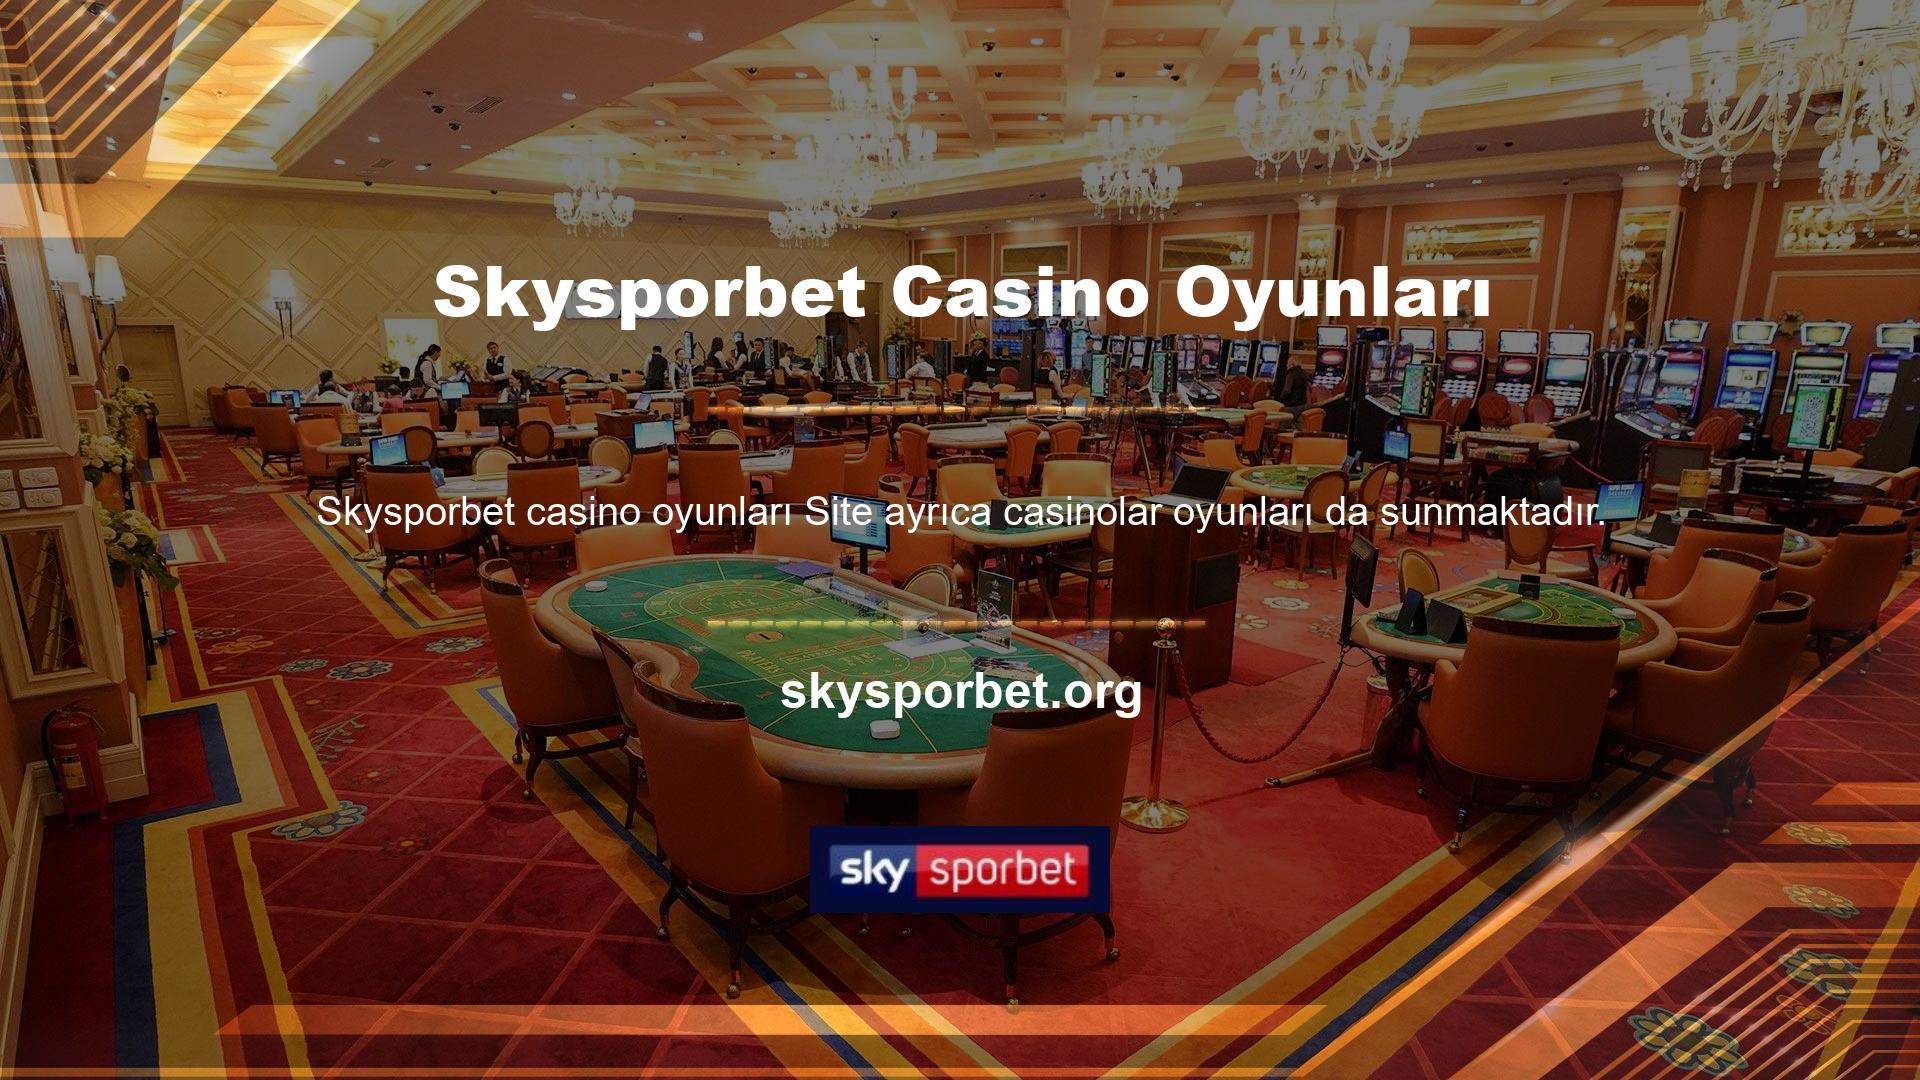 Casino oyunları, birçok bahis tutkunu için giderek daha önemli hale geliyor ve sitede sunulan ana seçeneklerden biri Skysporbet